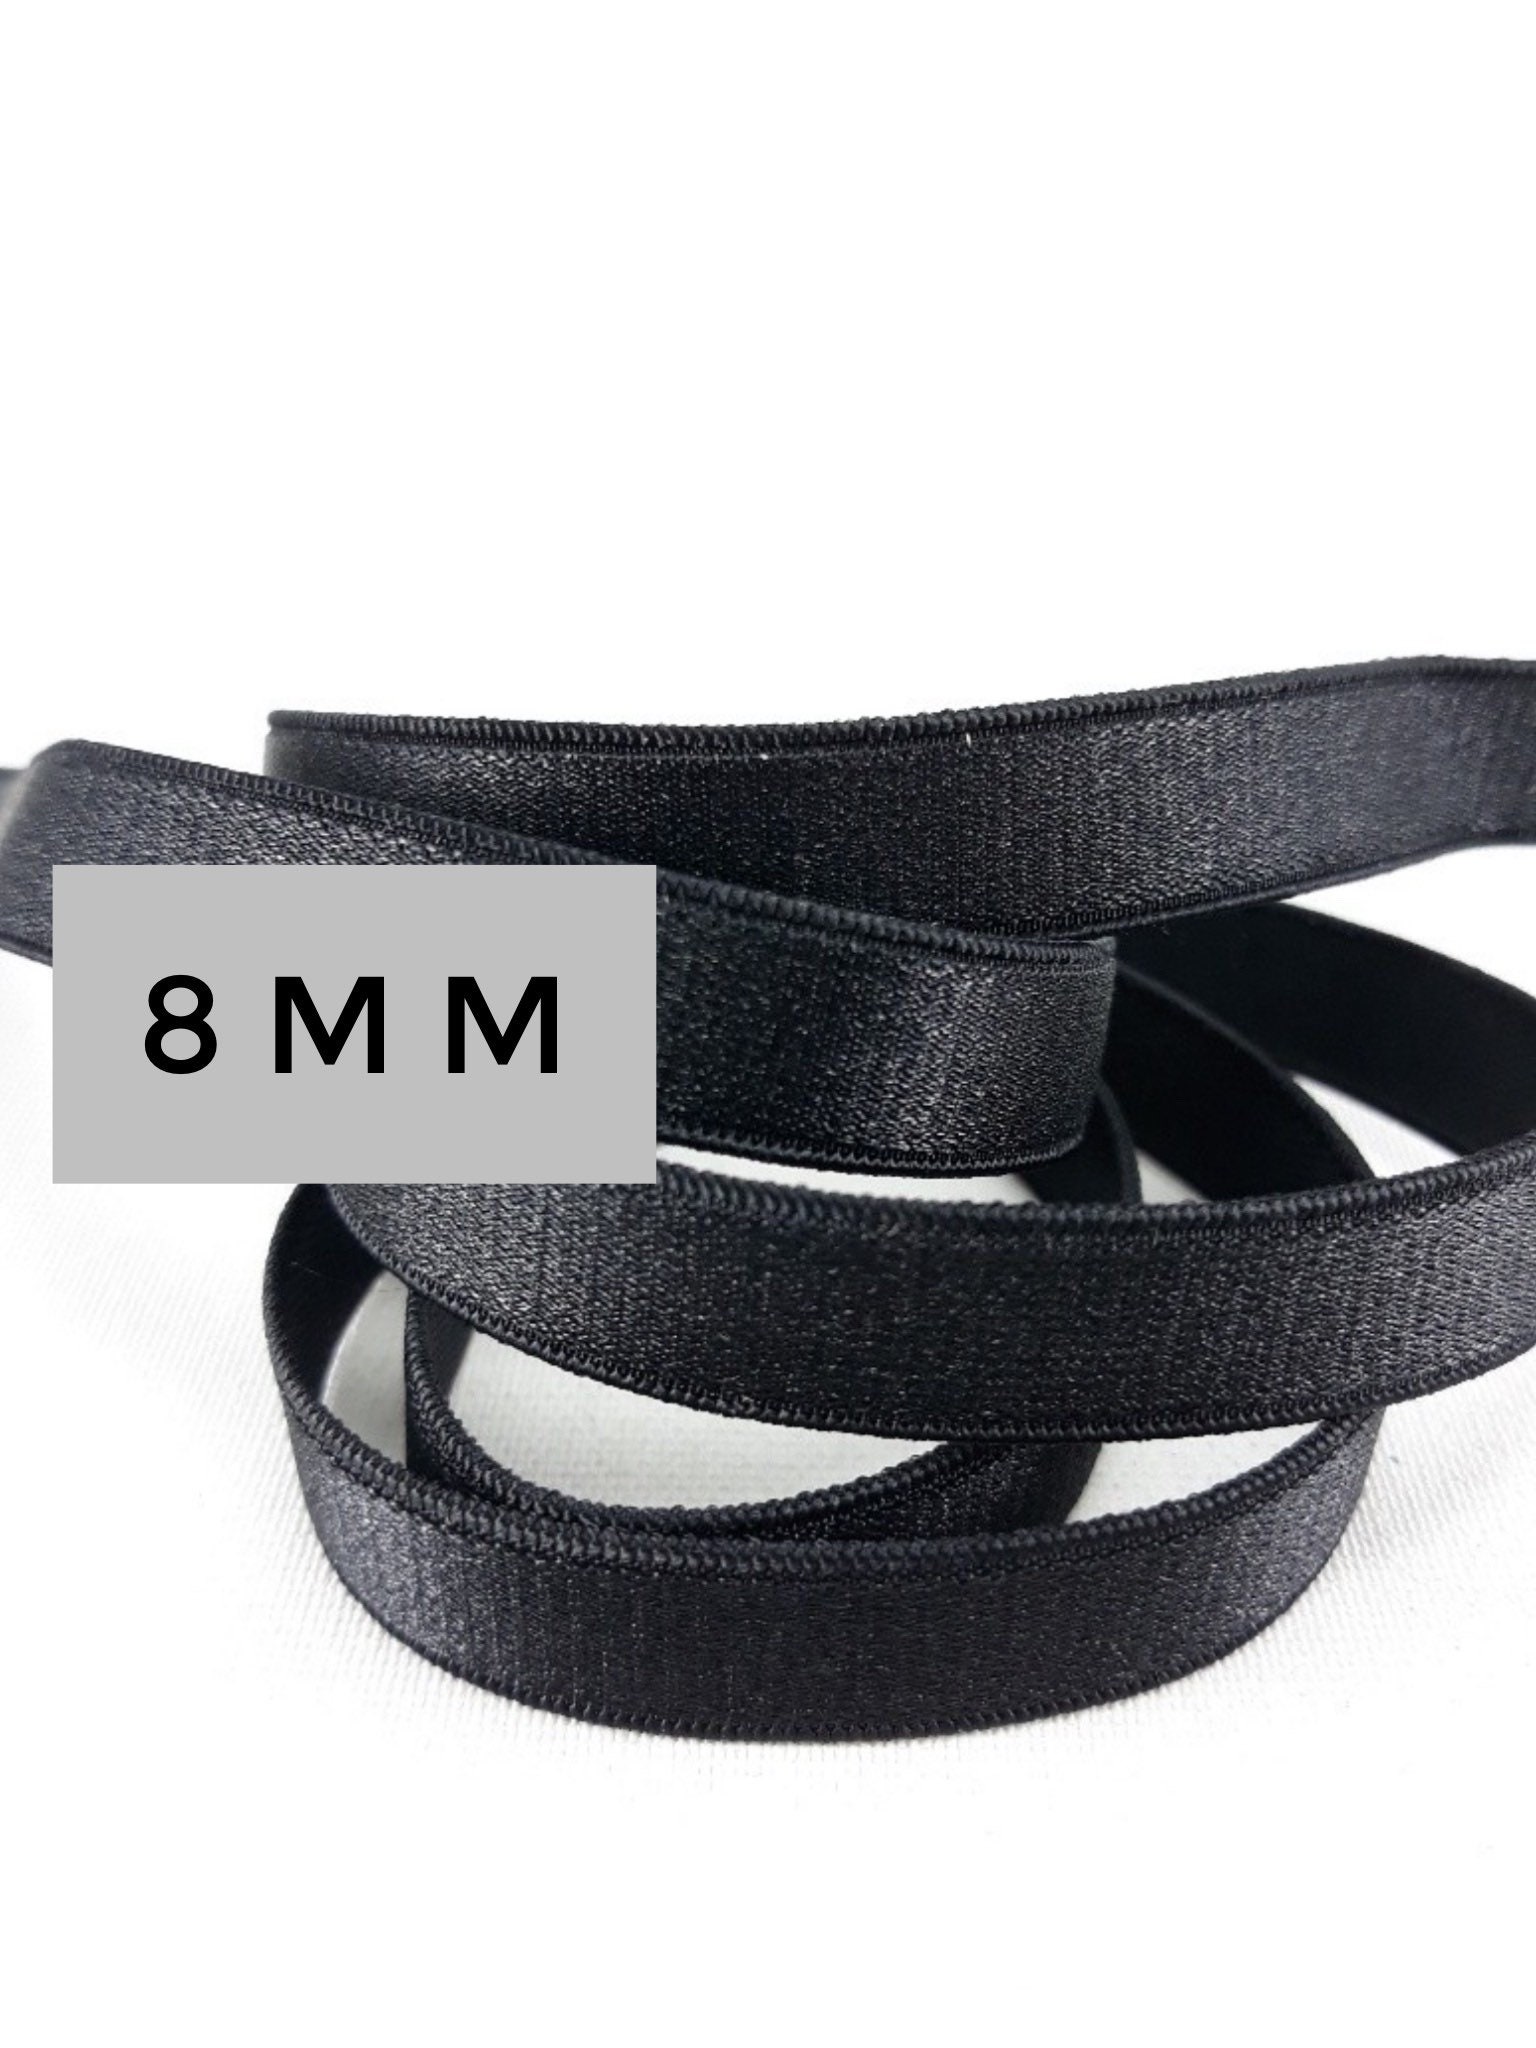 Fashionable & Convertible bra Strap Bracelet